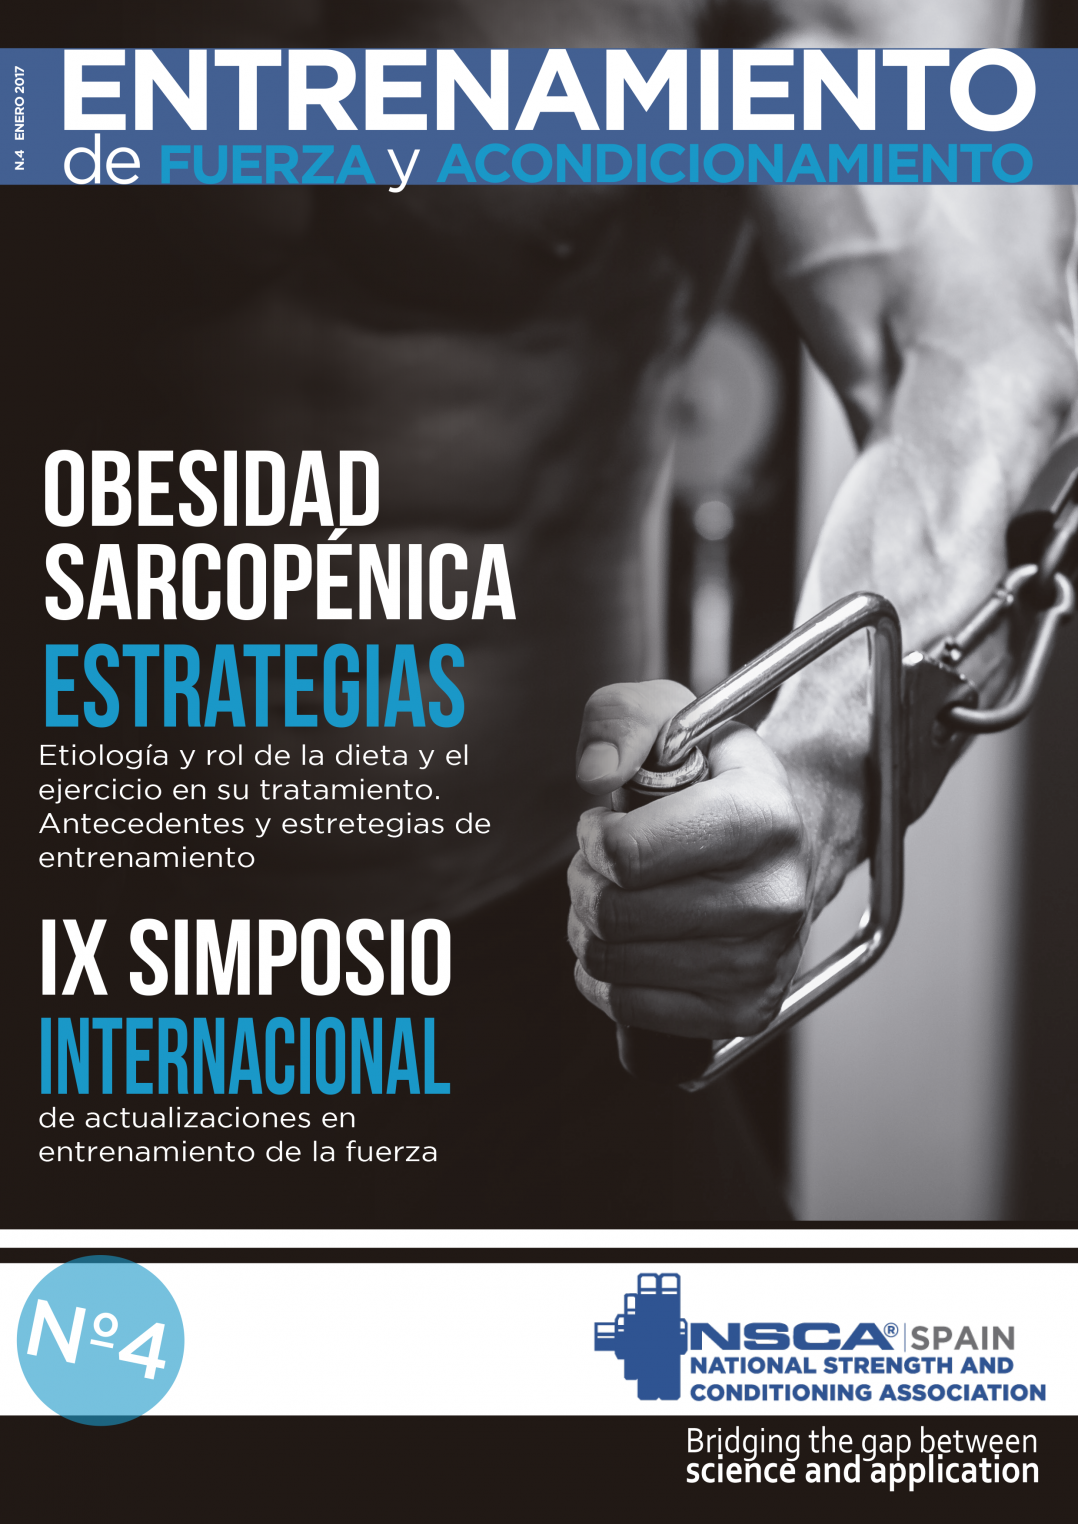 Nº 4 Journal NSCA Spain: Entrenamiento de fuerza y acondicionamiento físico - Febrero 2017